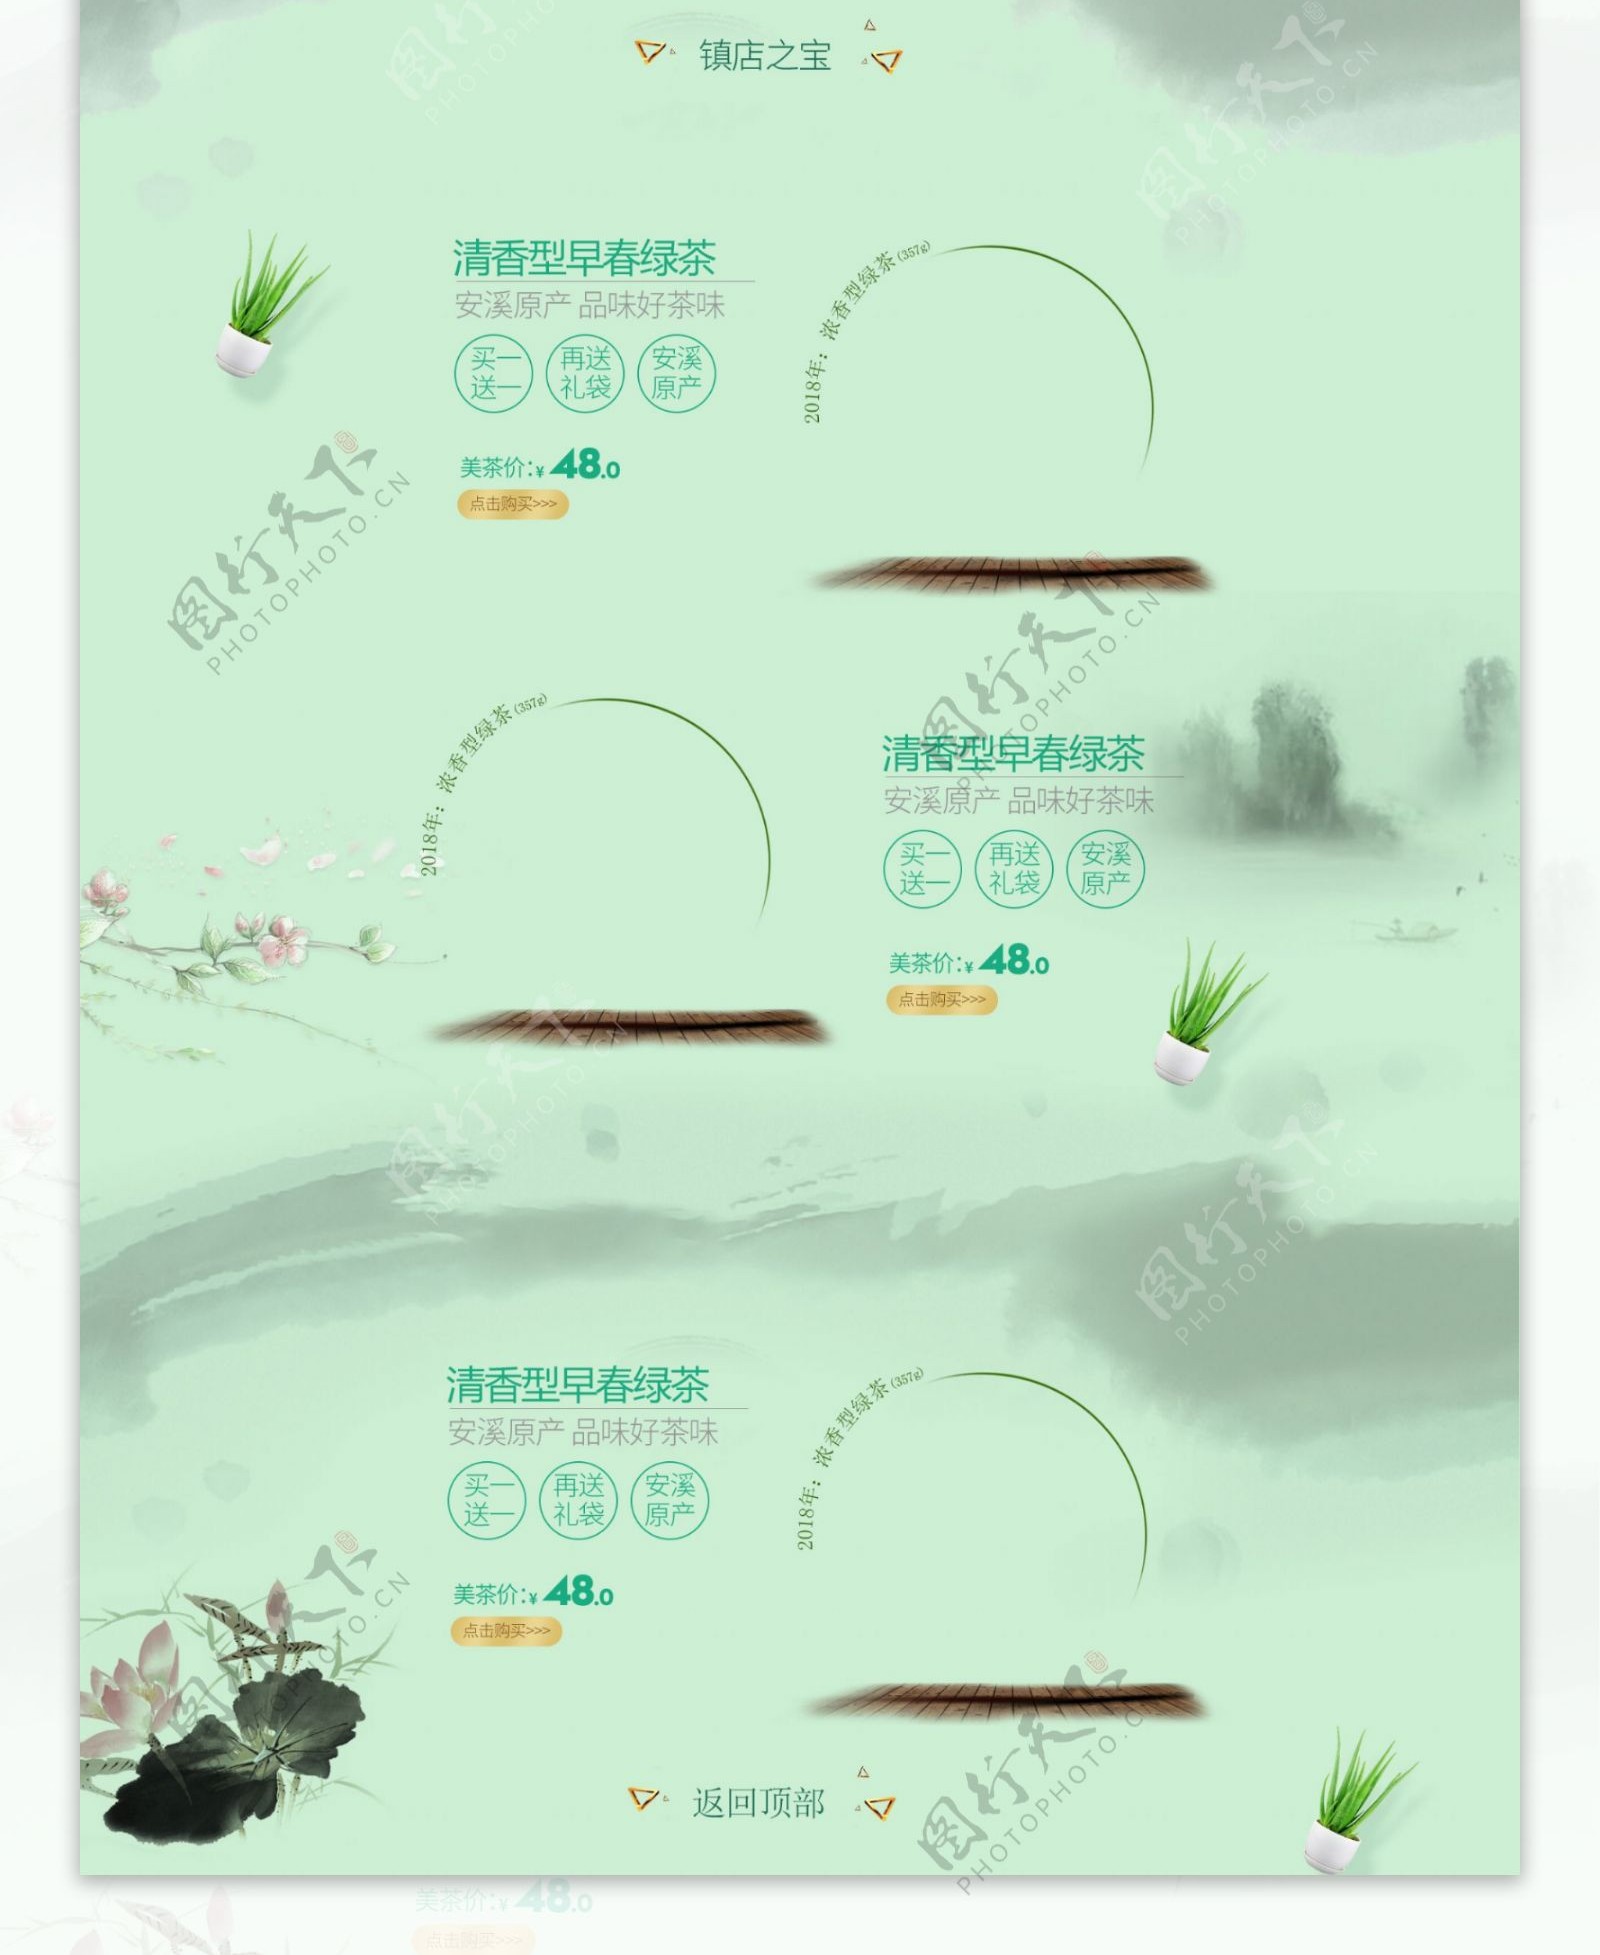 蓝色中国风电商促销春茶节淘宝首页促销模版